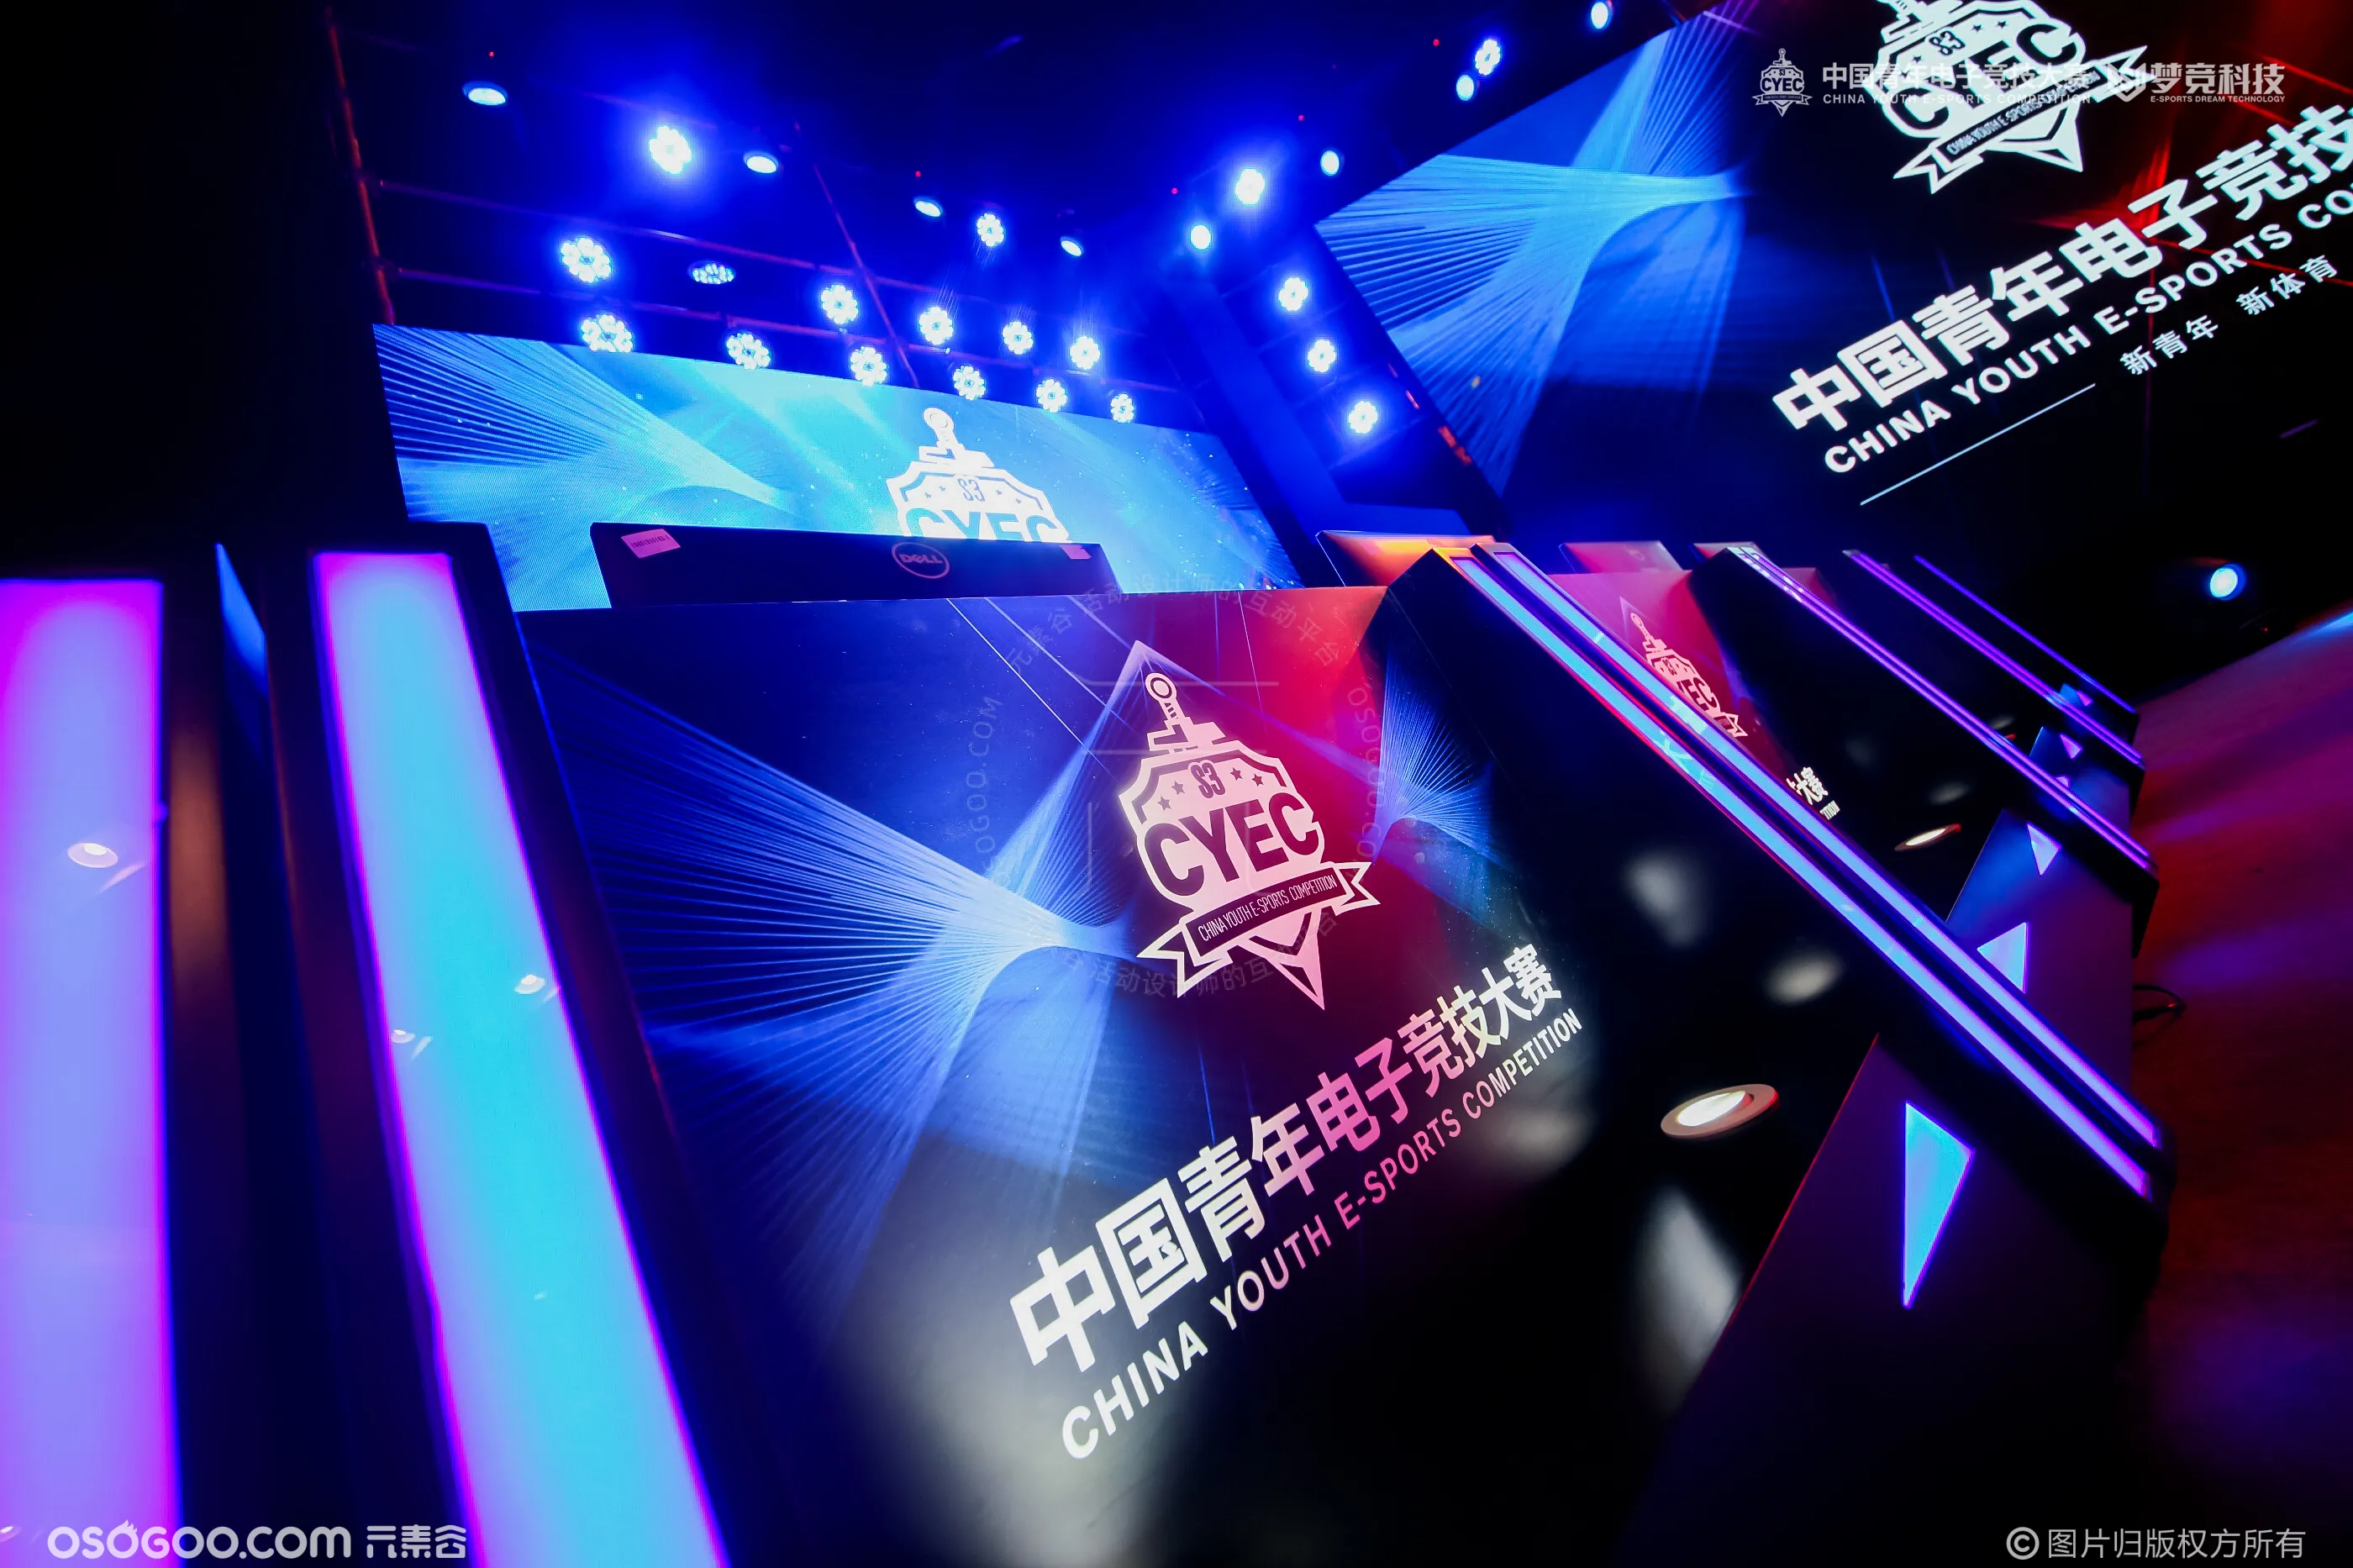 2019第三届CYEC中国青年电子竞技大赛